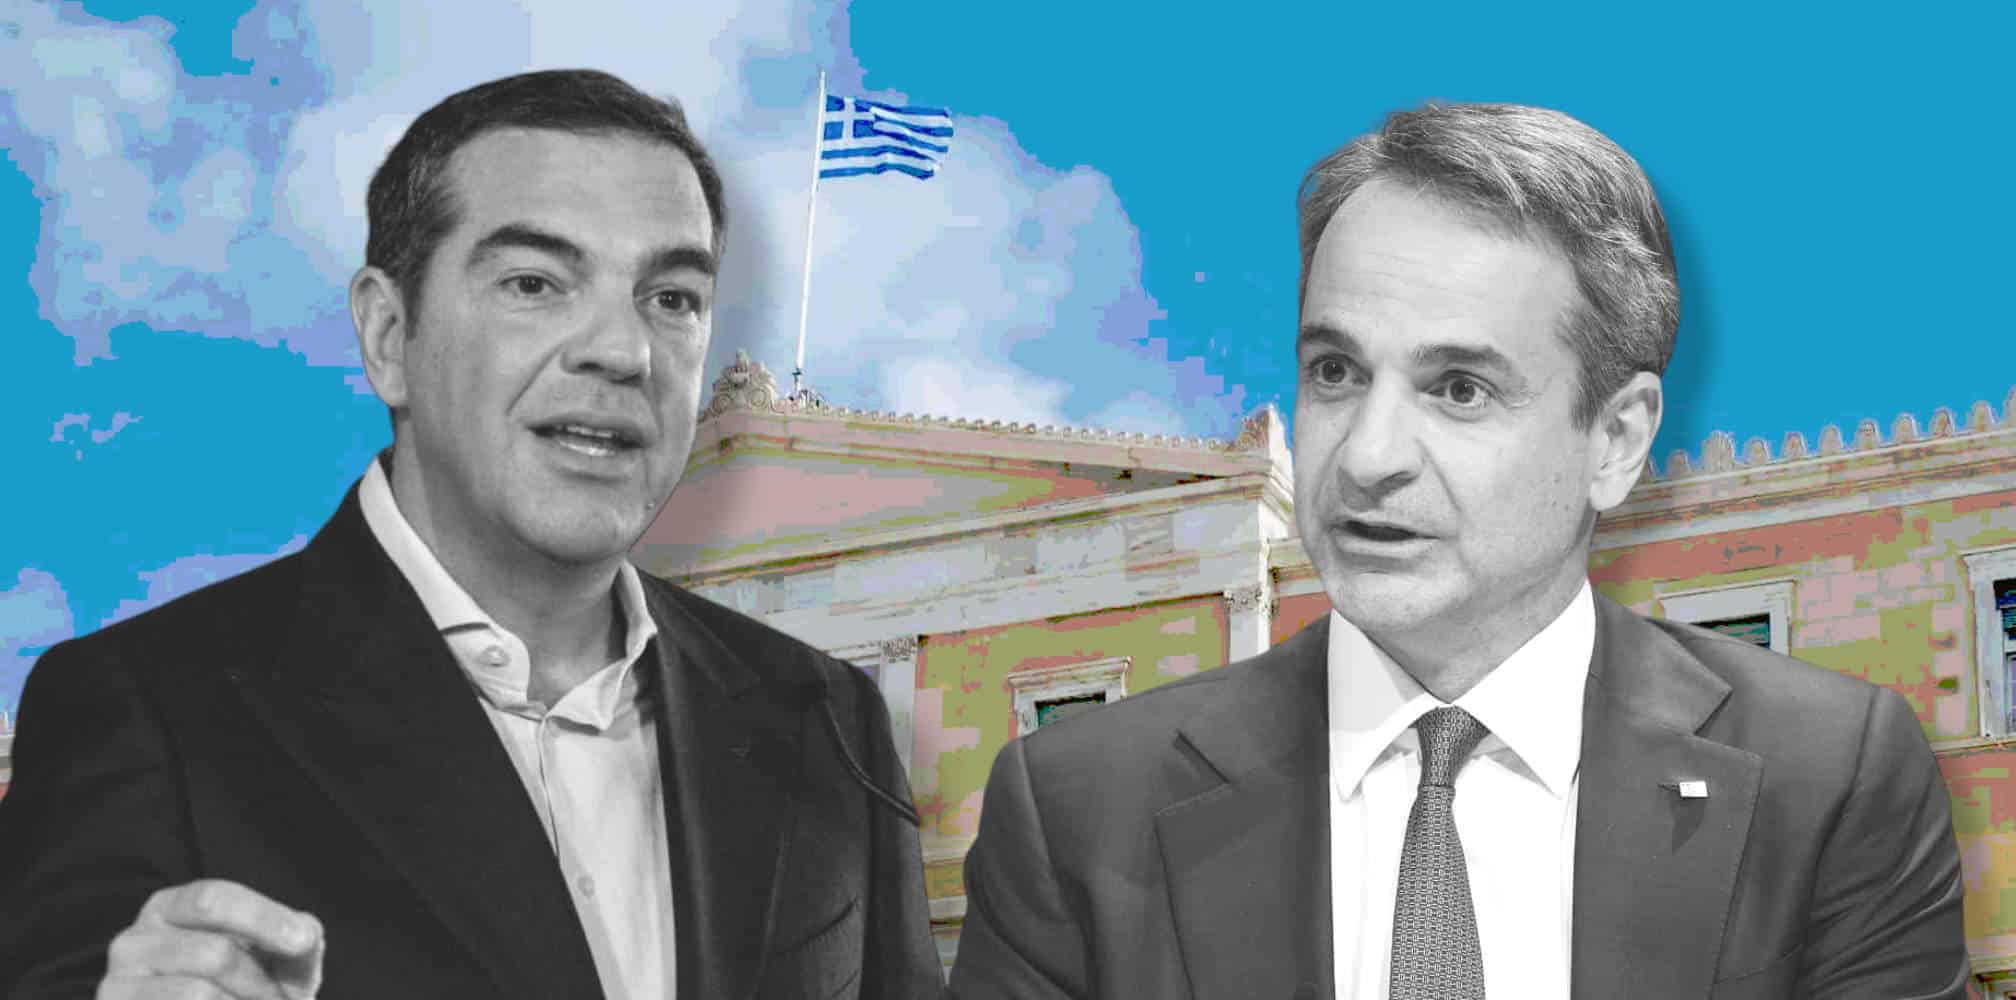 Ο Αλέξης Τσίπρας και ο Κυριάκος Μητσοτάκης θα βρεθούν αντιμέτωπη στη Βουλή κατά την πρόταση δυσπιστίας